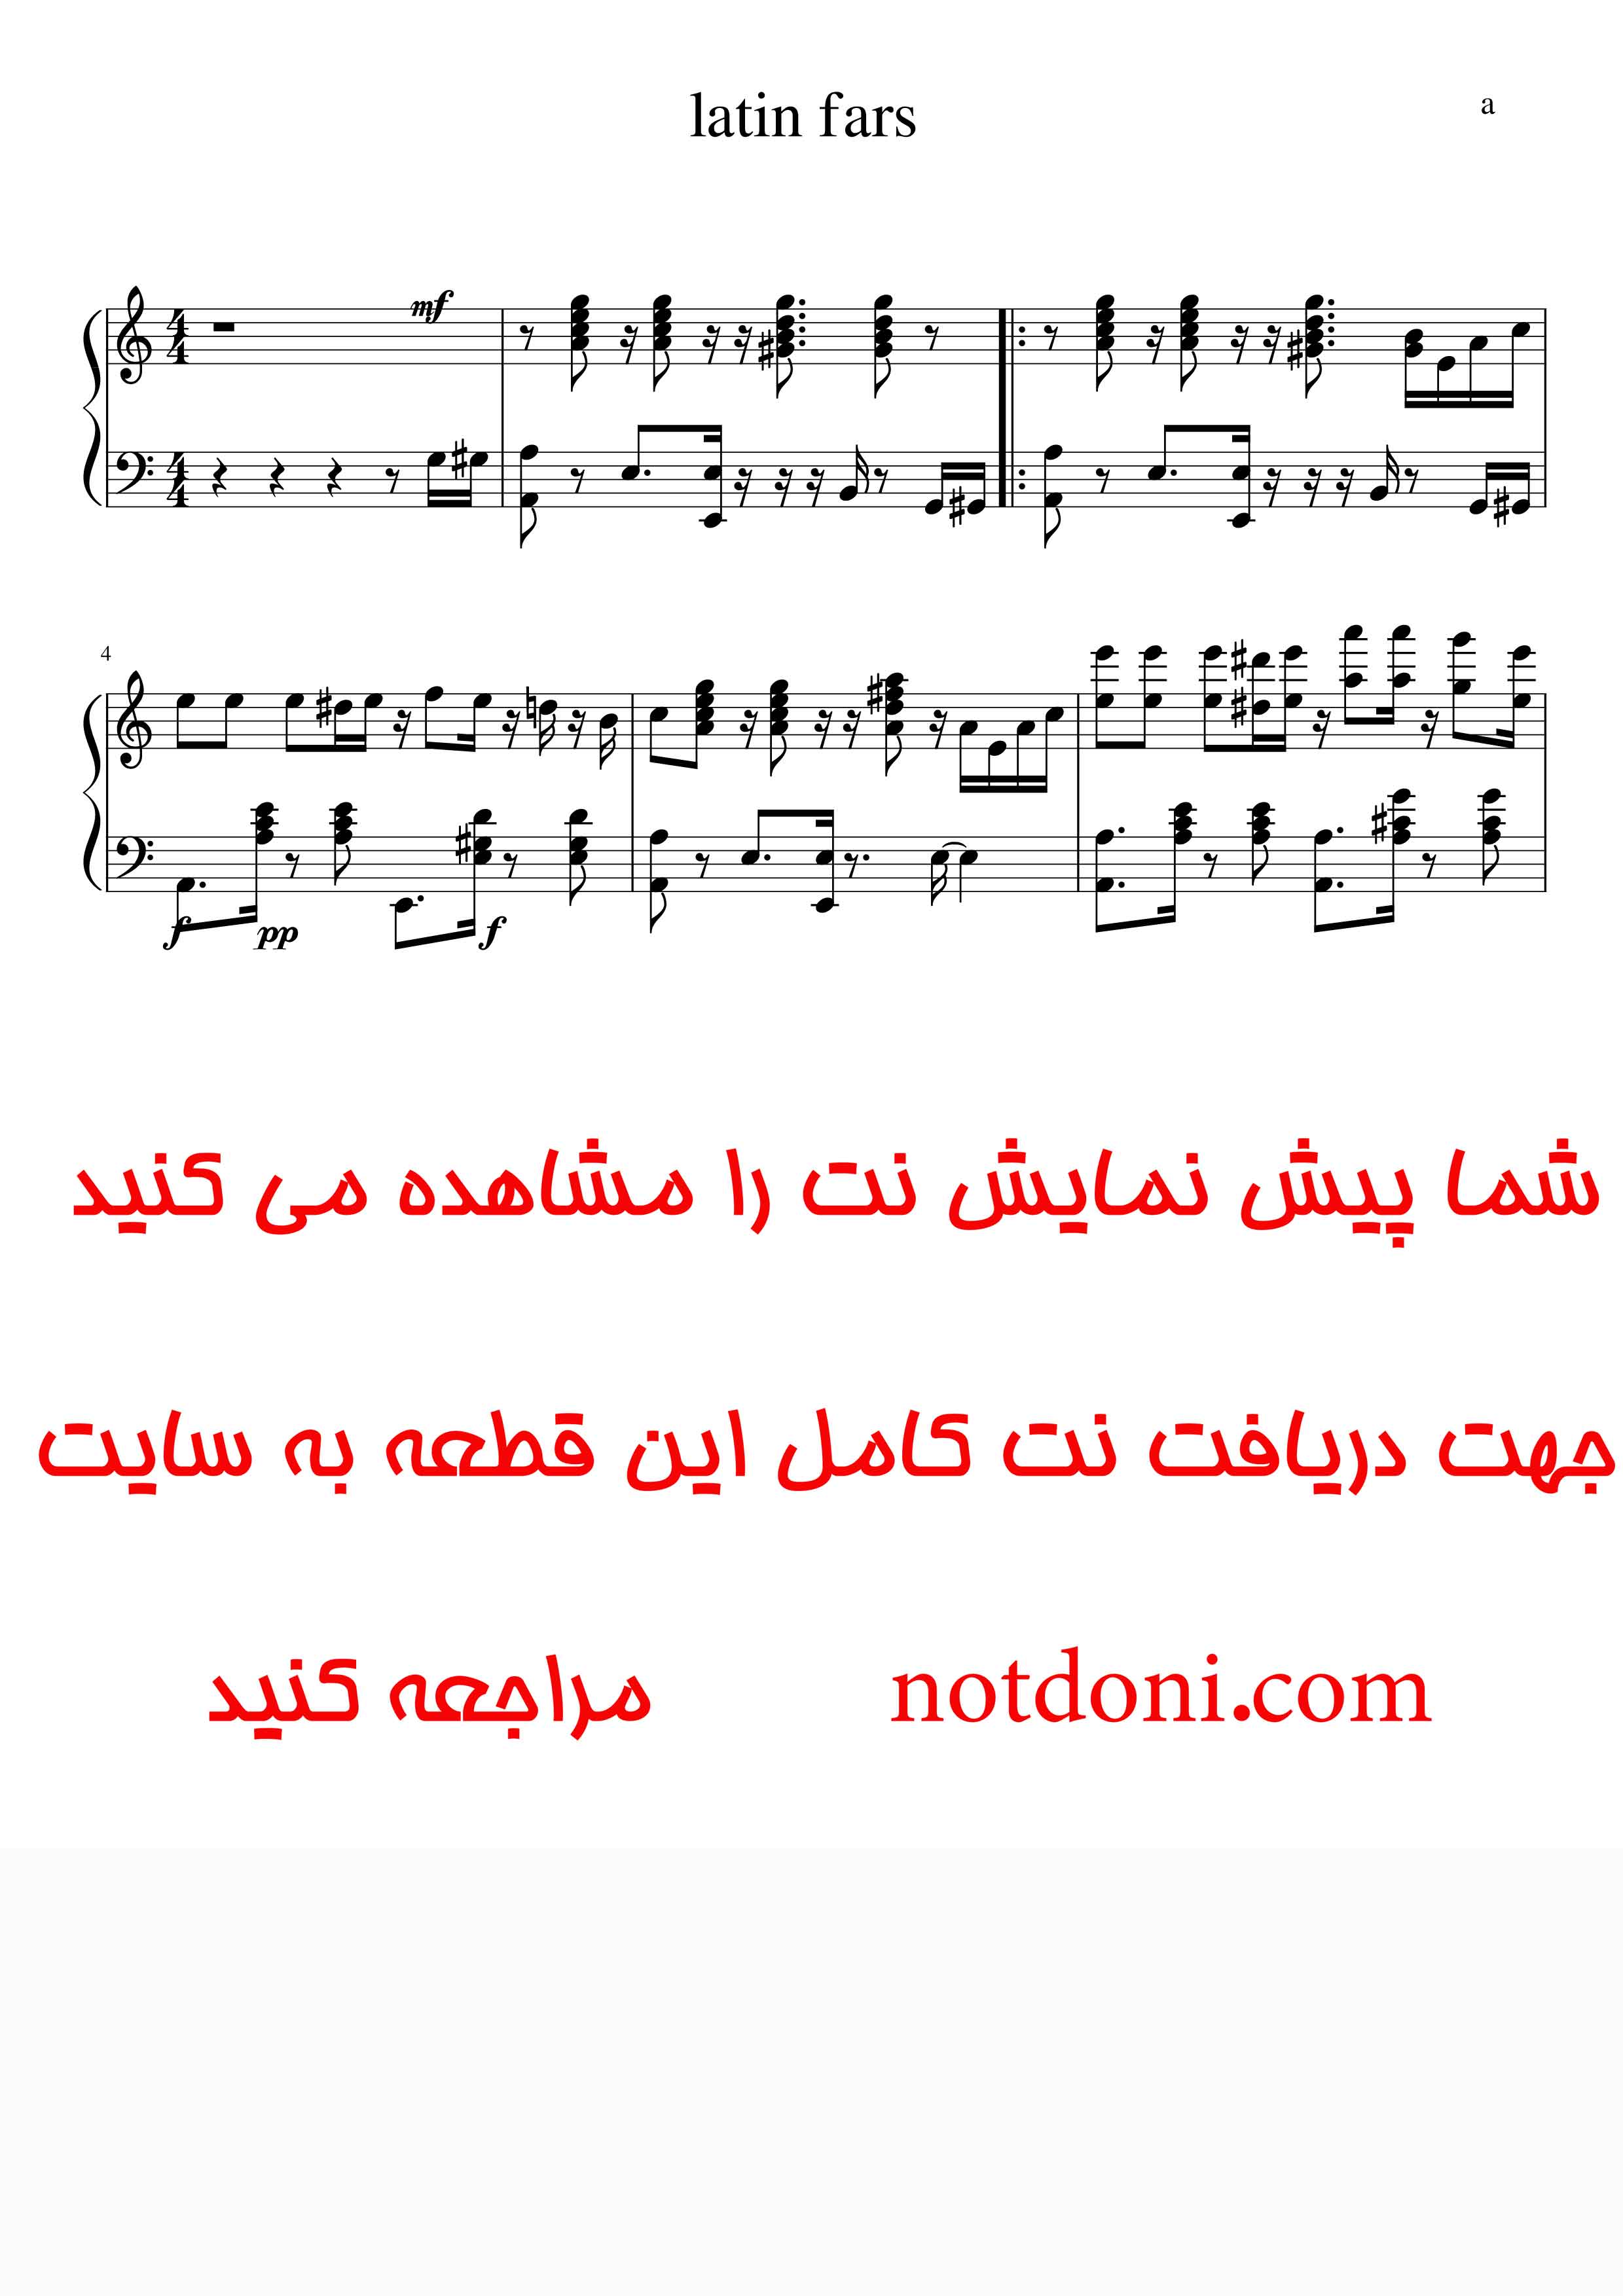 نت یک قطعه لاتین جاز فارسی برای پیانو